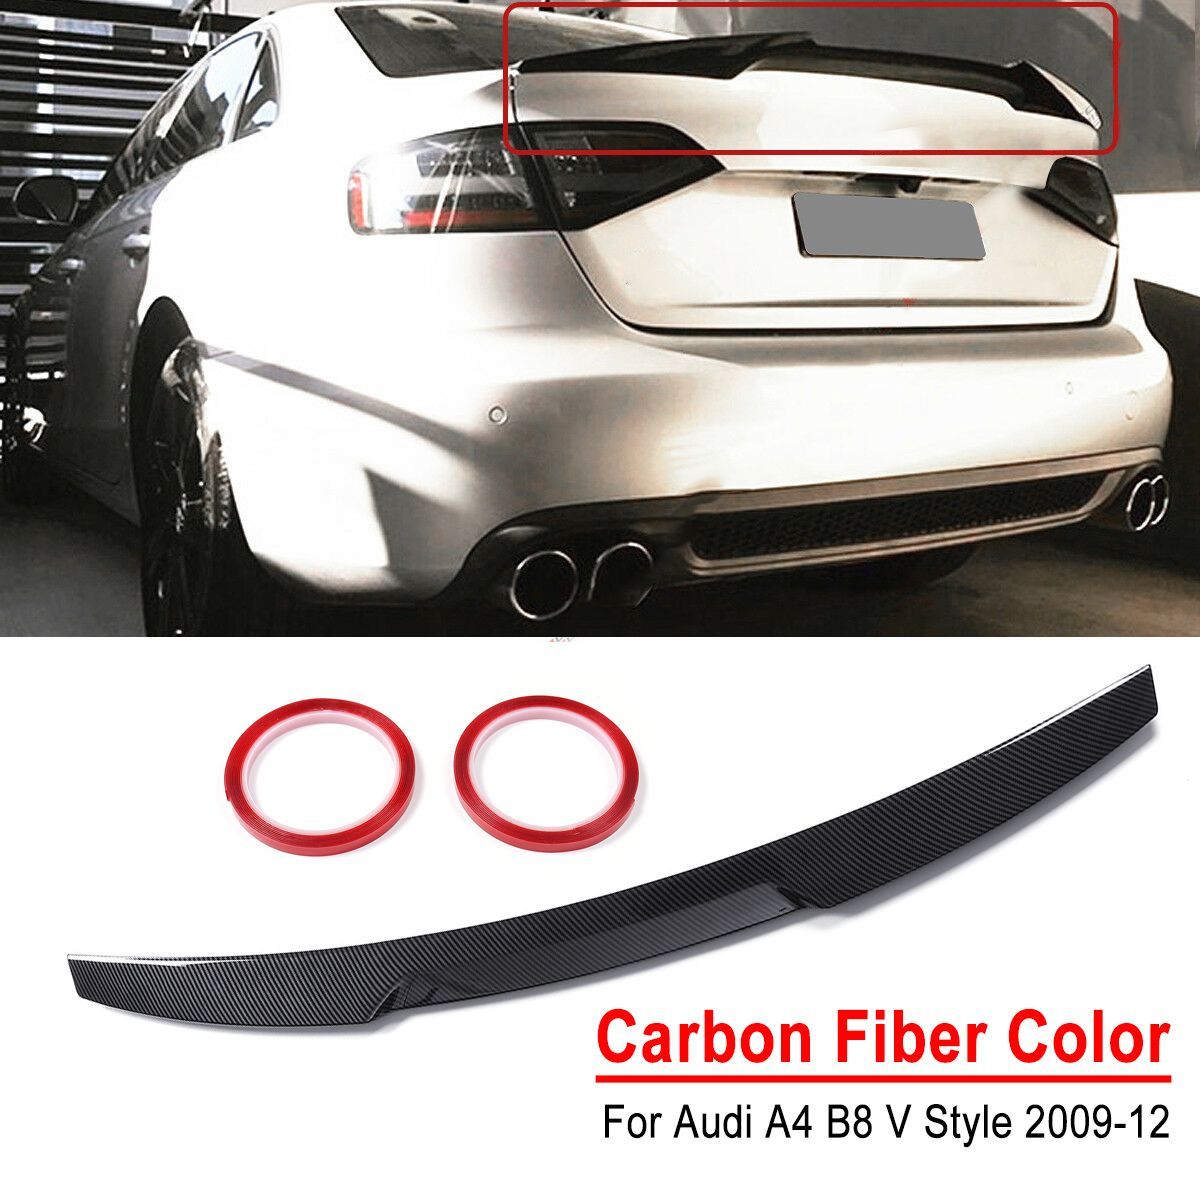 Carbon-Fiber-Color-Trunk-Lid-Spoiler-M4-V-Style-Highkick-Duckbill-For-Audi-A4-B8-2009-2012-1663702